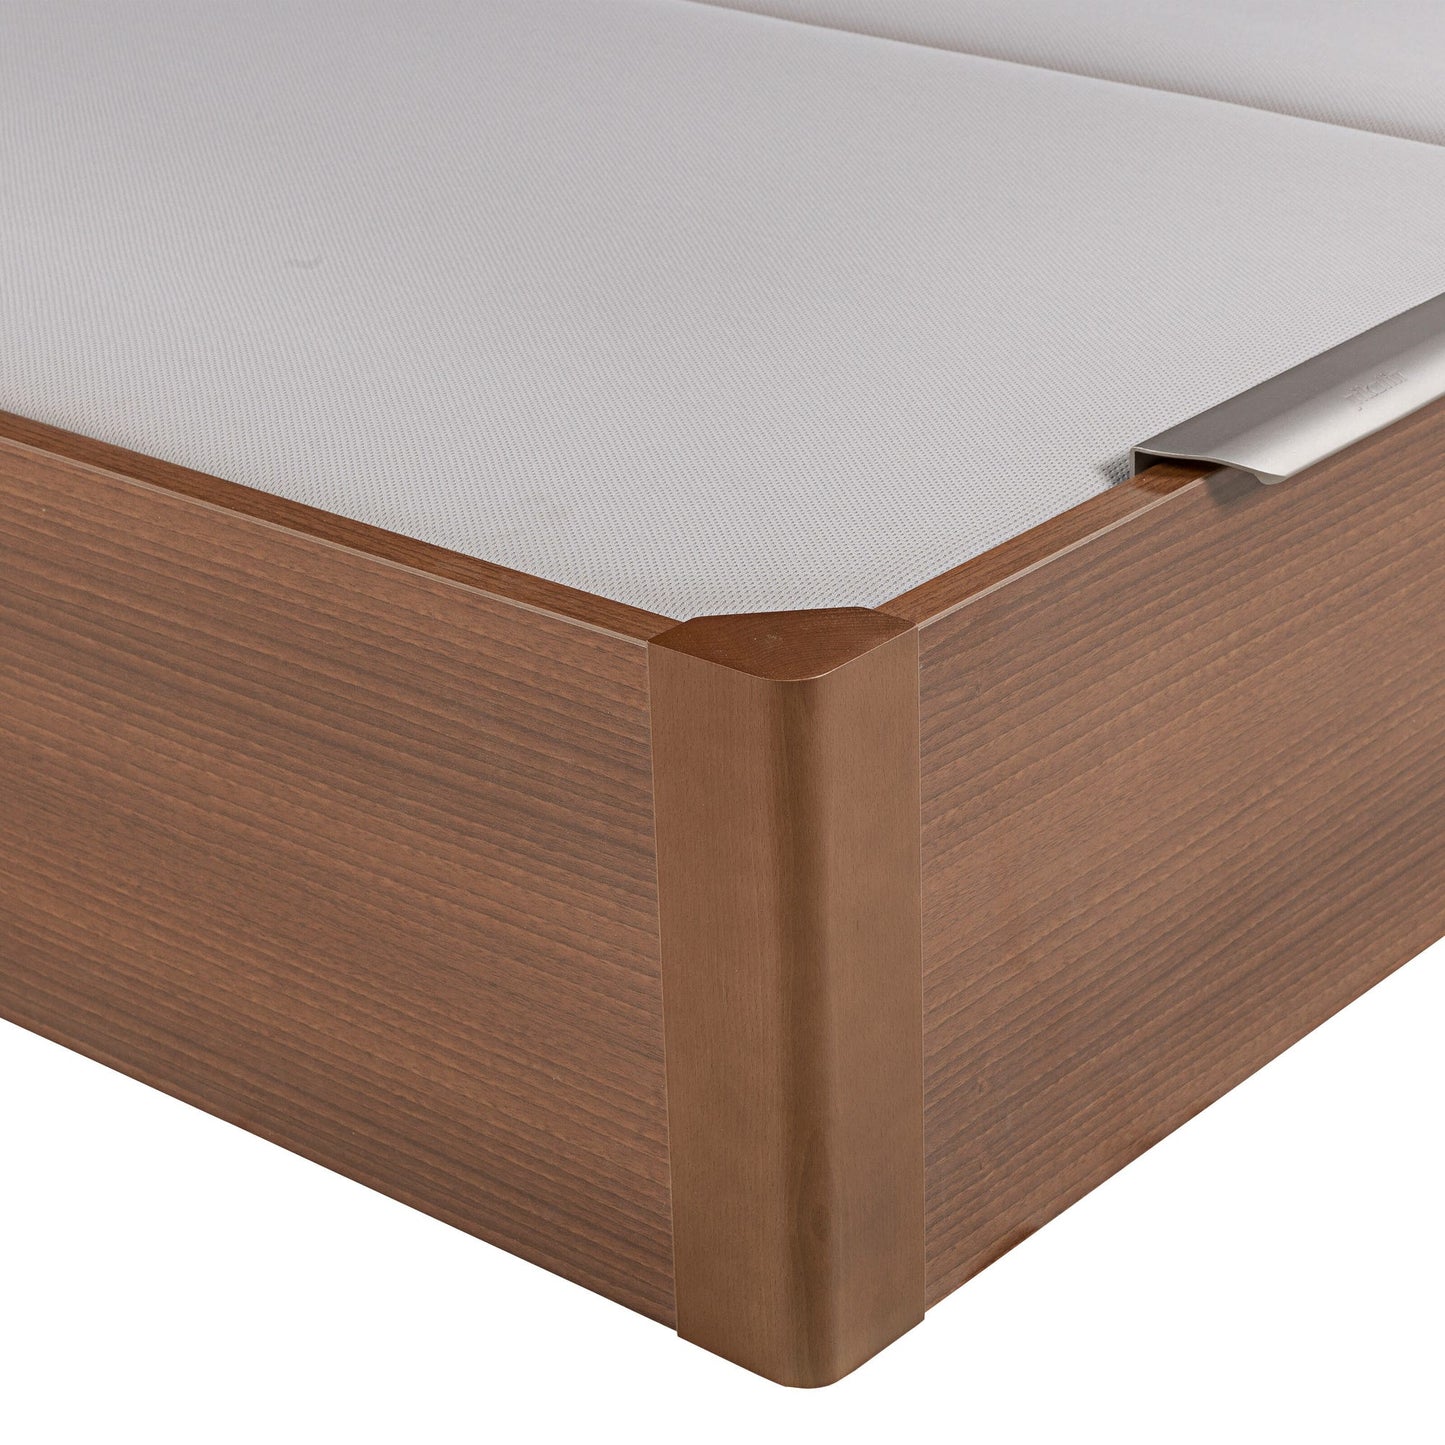 Canapé abatible de madera de tapa doble de color cerezo - DESIGN - 180x220